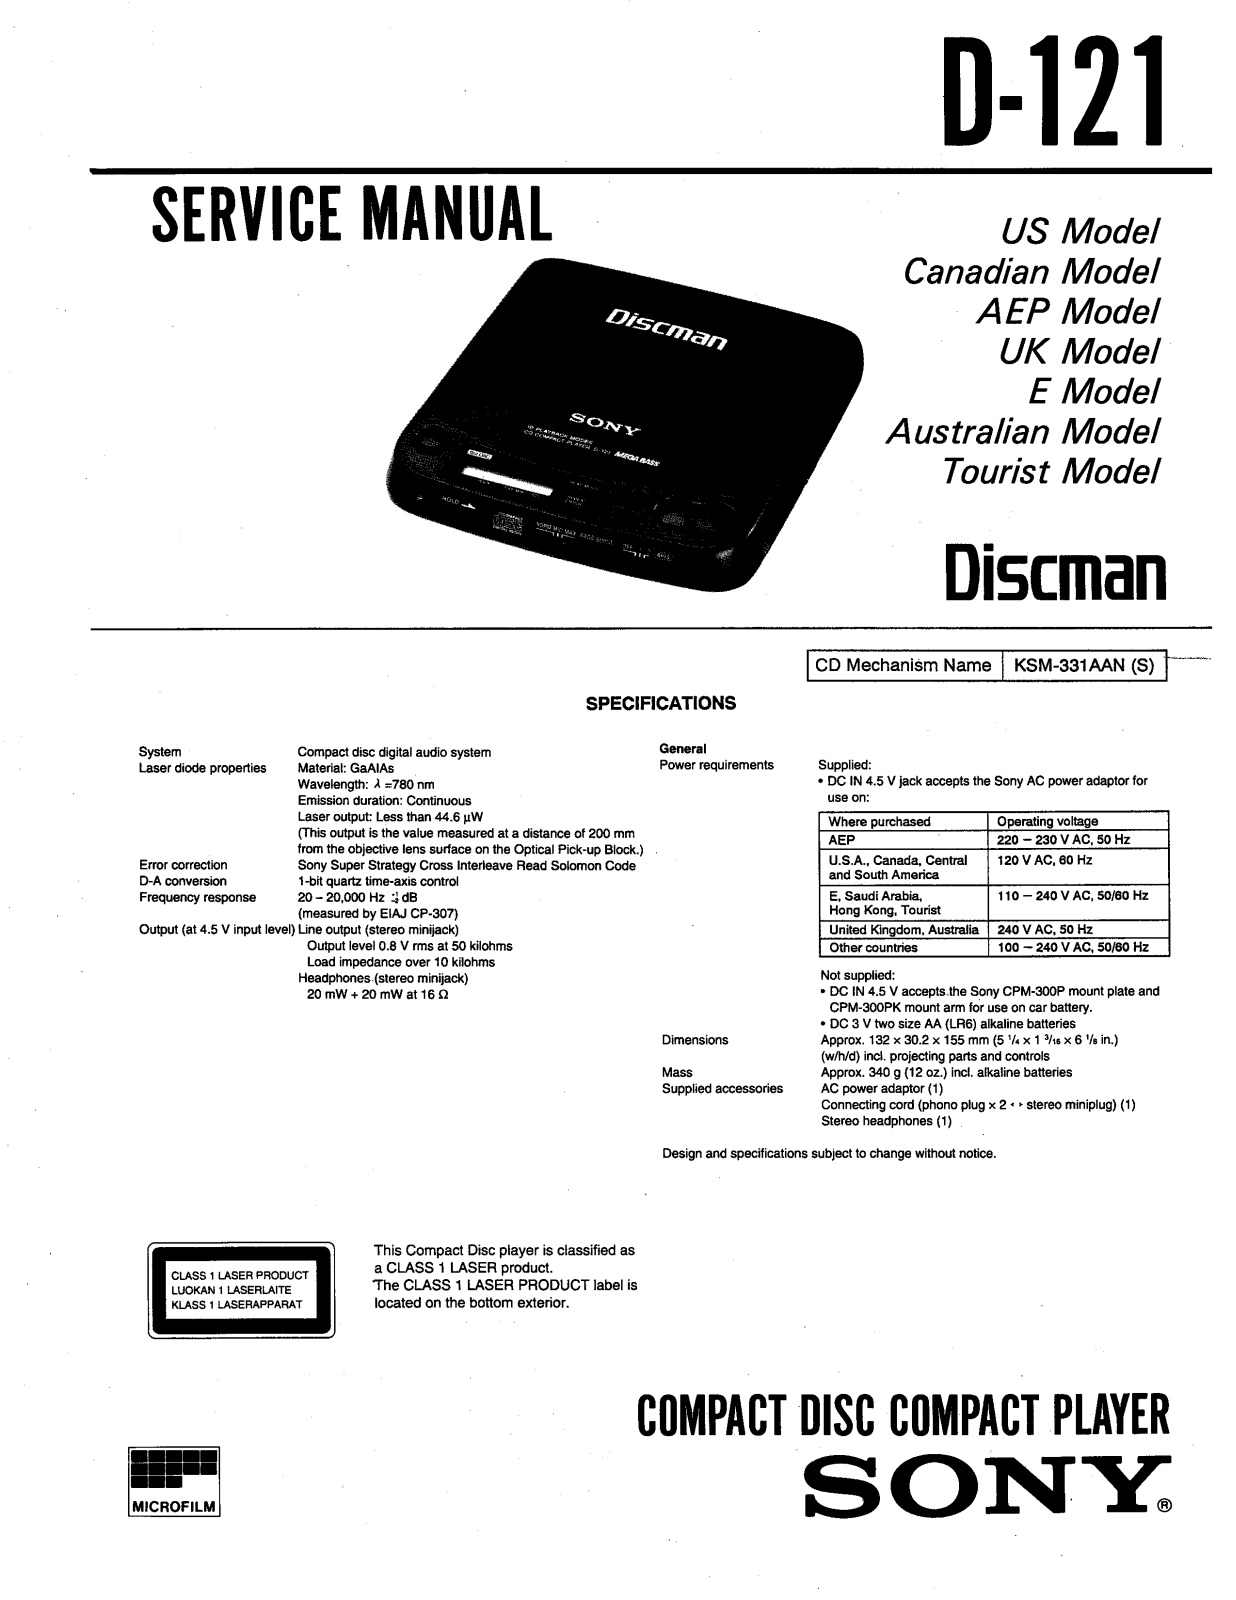 SONY D 121 Service Manual